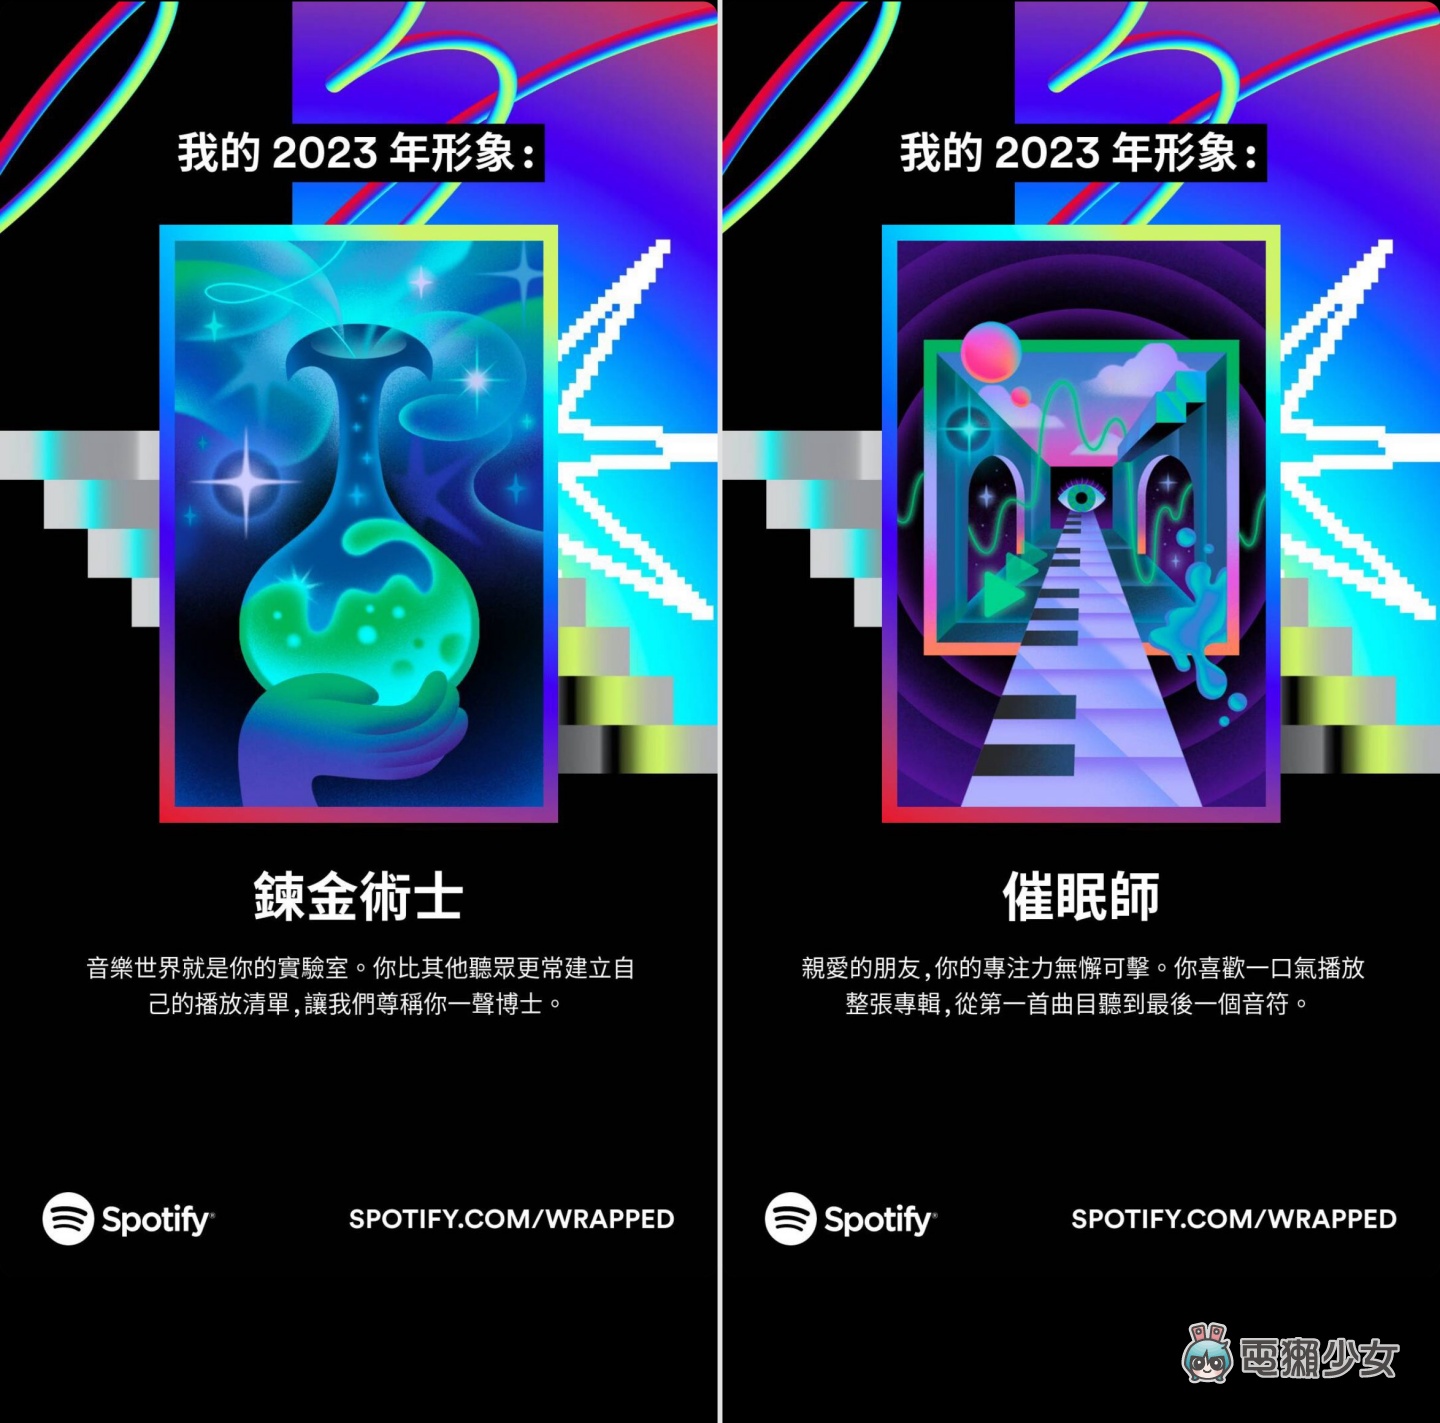 Spotify 2023 年度回顧排行榜出爐！〈想和你看五月的晚霞〉榮登臺灣聽眾年度最愛歌曲